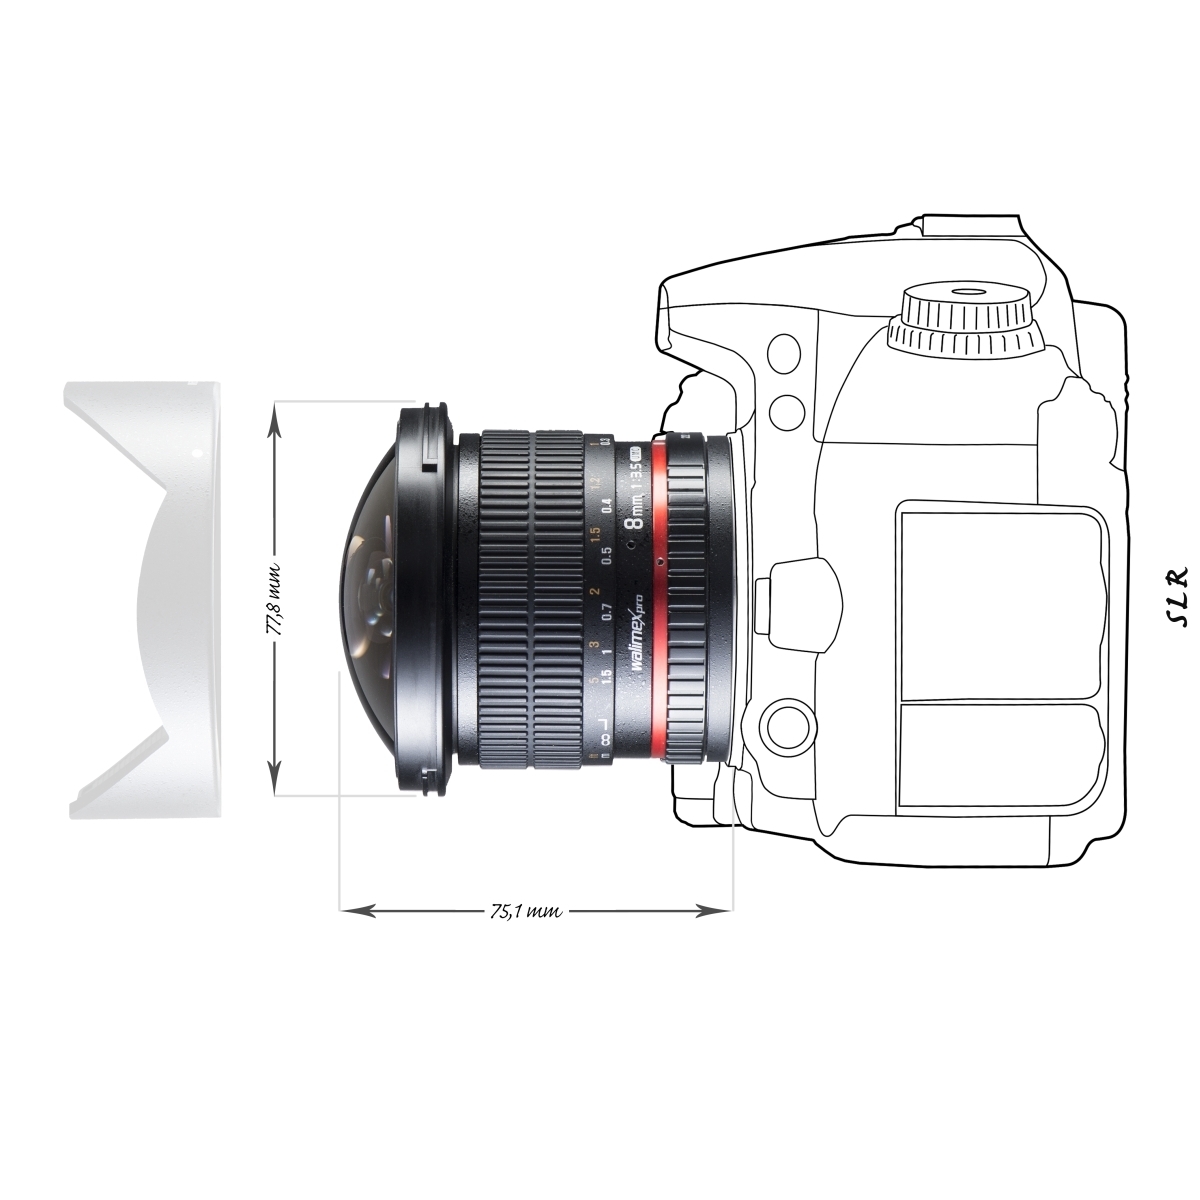 Walimex Pro 10mm 1:3,1 VCSC-Weitwinkelobjektiv für Pentax K Objektivbajonett schwarz manueller Fokus, für APS-C Sensor gerechnet, IF, stufenlose Blendeneinstellung, Zahnkranz, mit Gegenlichtblende 